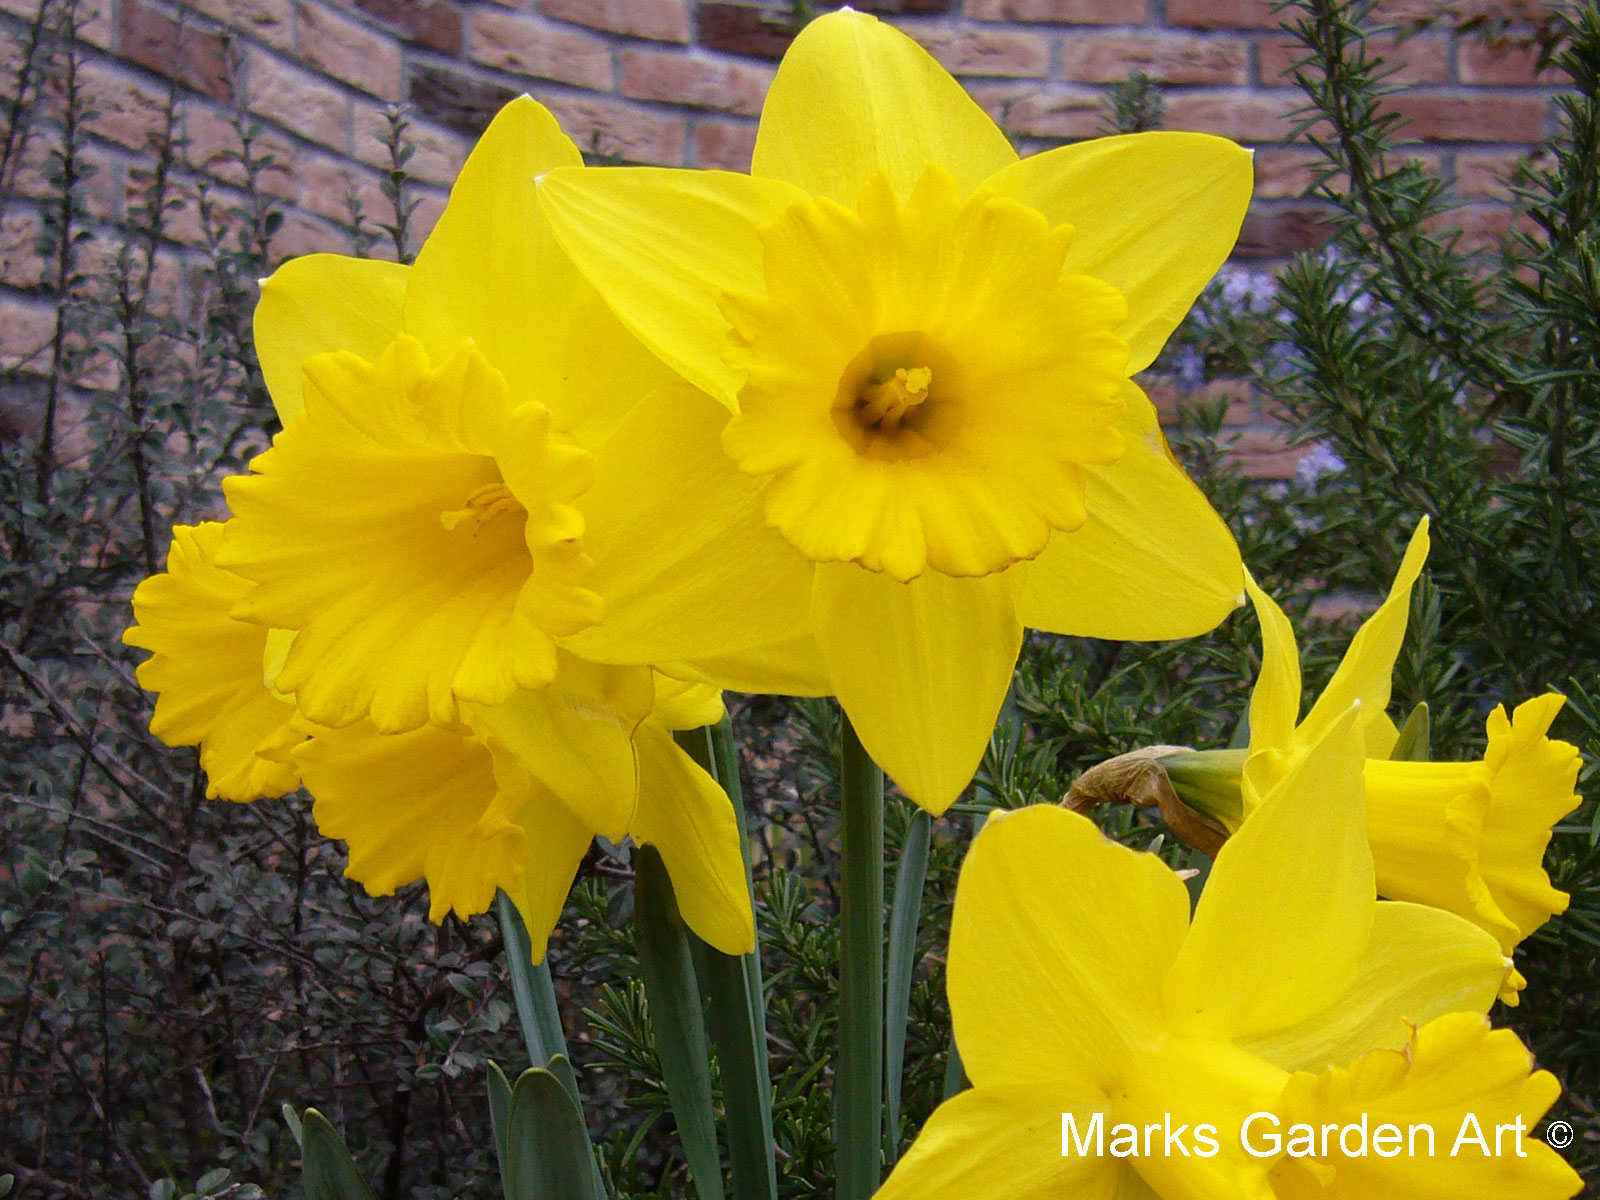 魅力的な植物達 球根スイセン (Narcissus) - Blog| マークス ガーデン アート by ブリティッシュ クリエイティブ デザイン